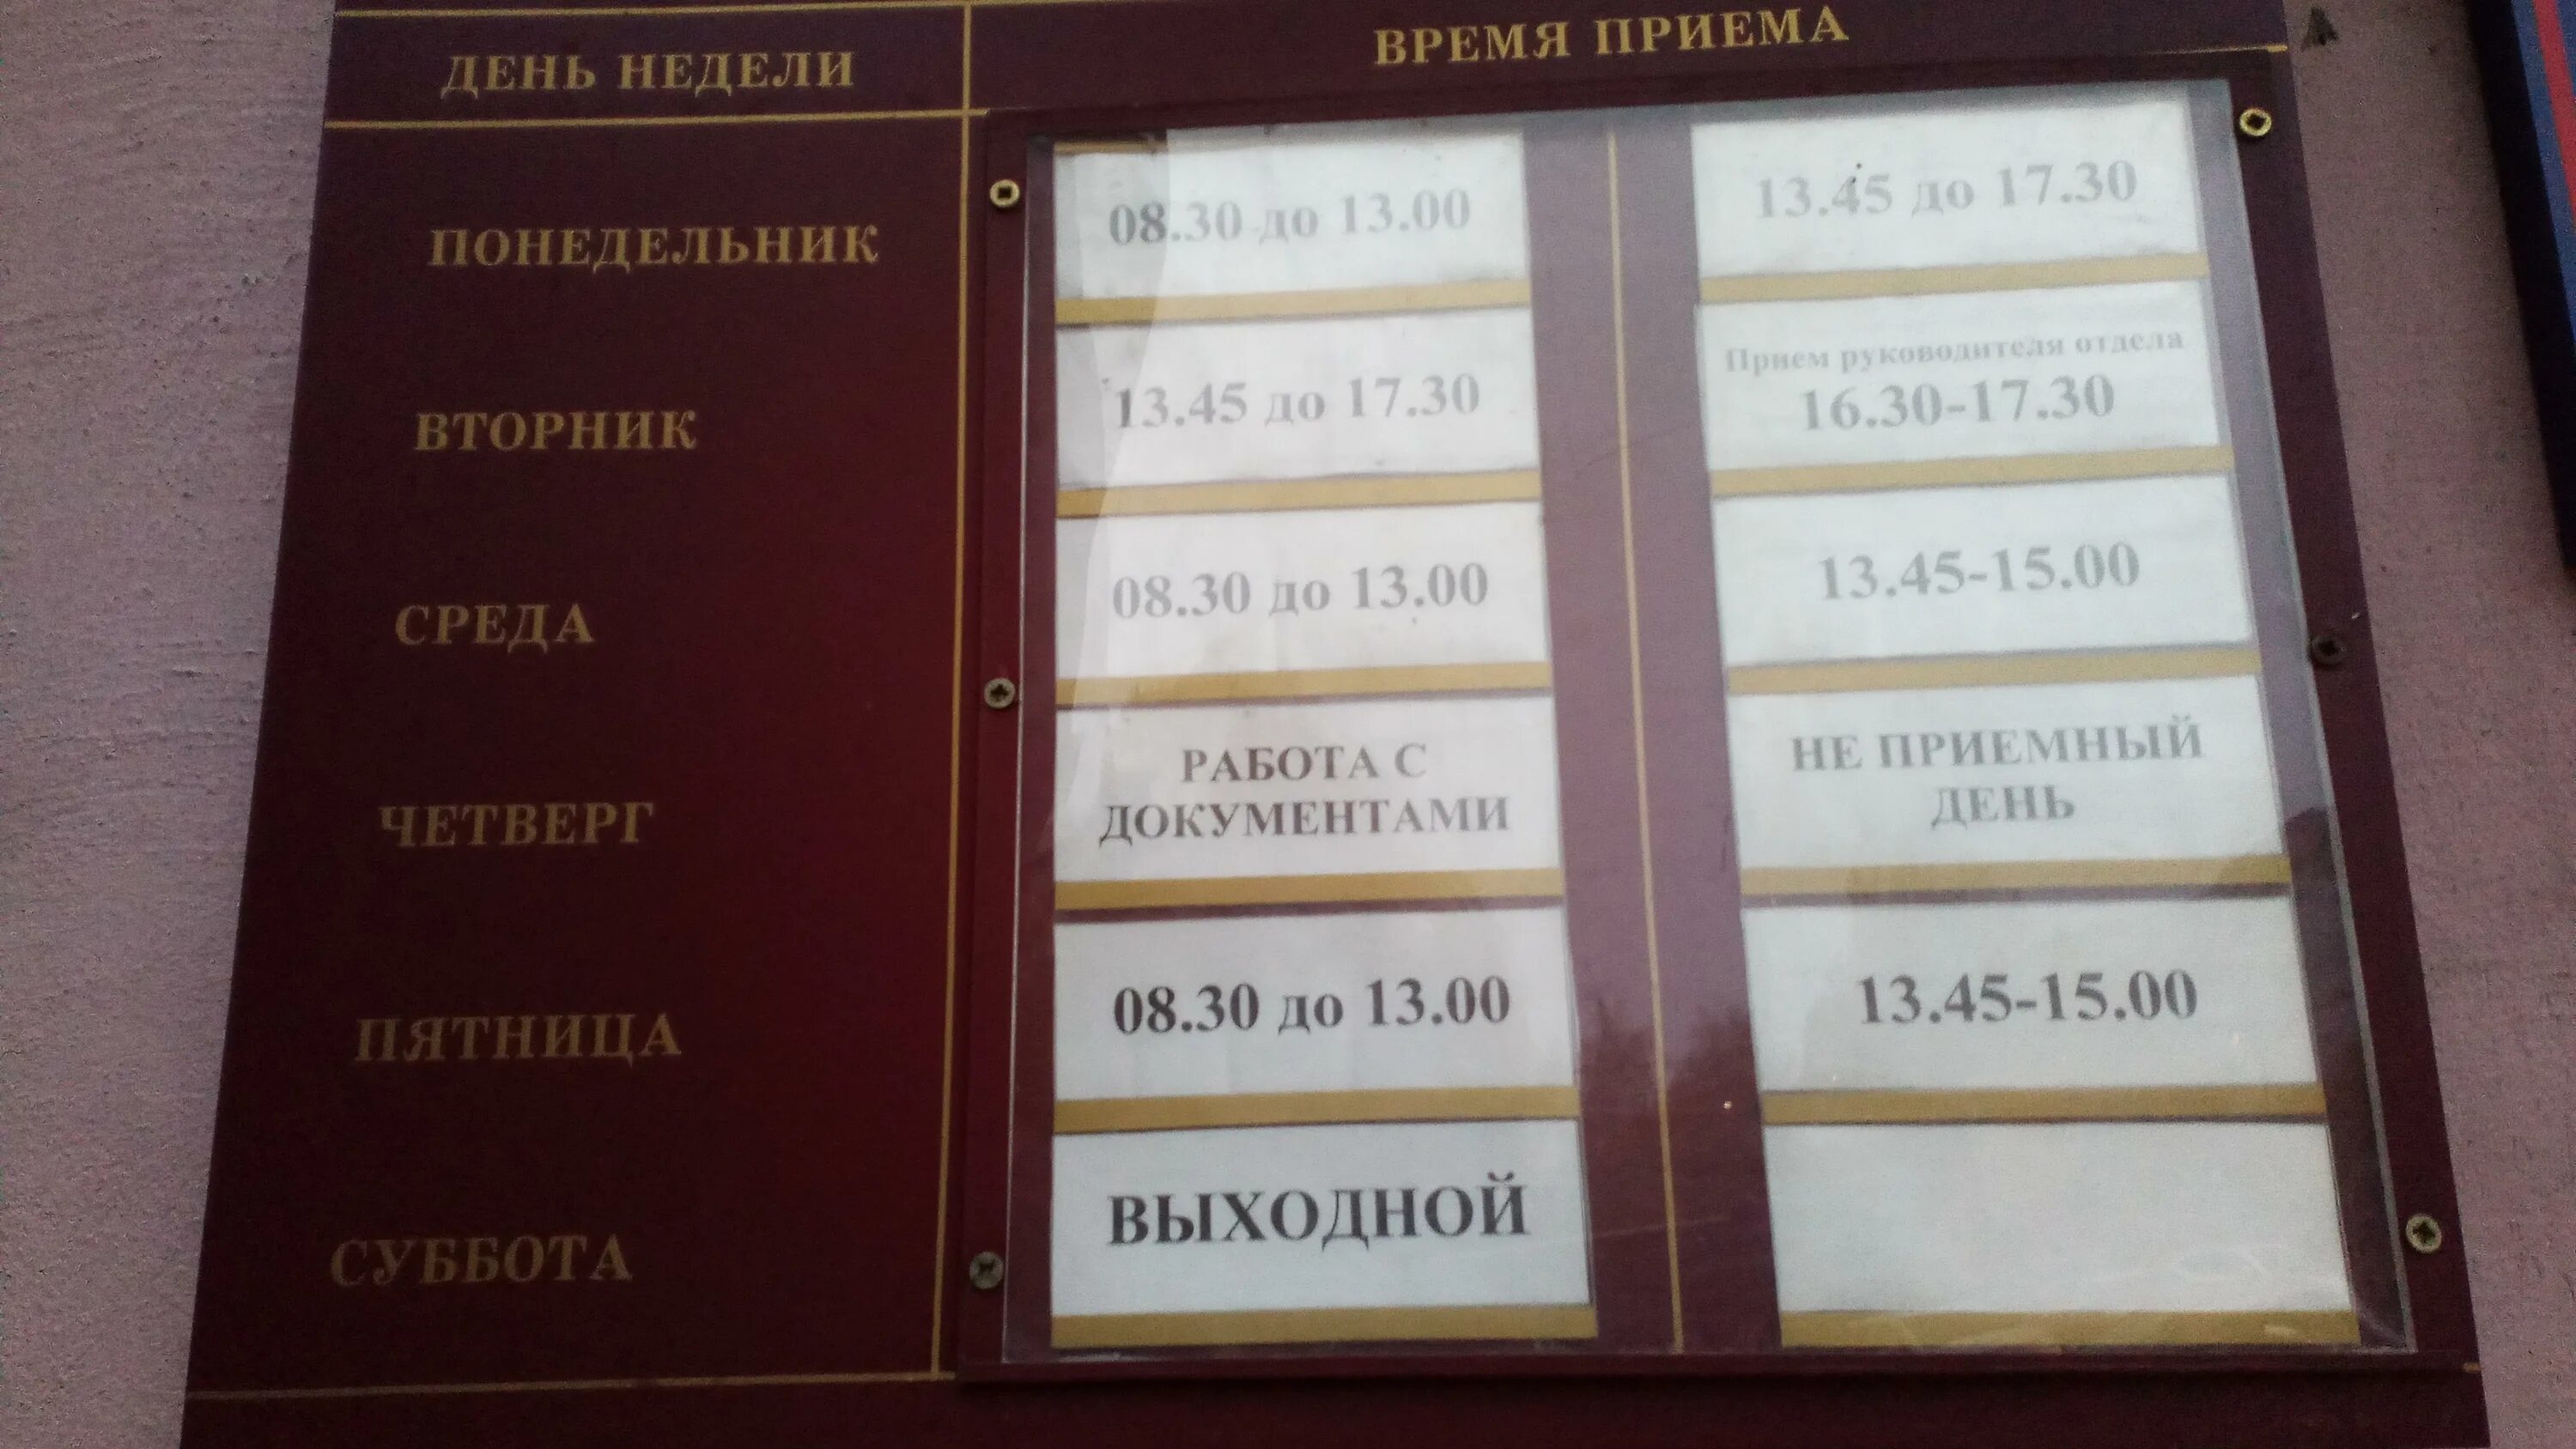 Пятница не приемный день работа с документами. Костычева 14 паспортный стол. Паспортный стол Ленинского района Новосибирск. Паспортный стол приколы. Номер ленинского паспортного стола